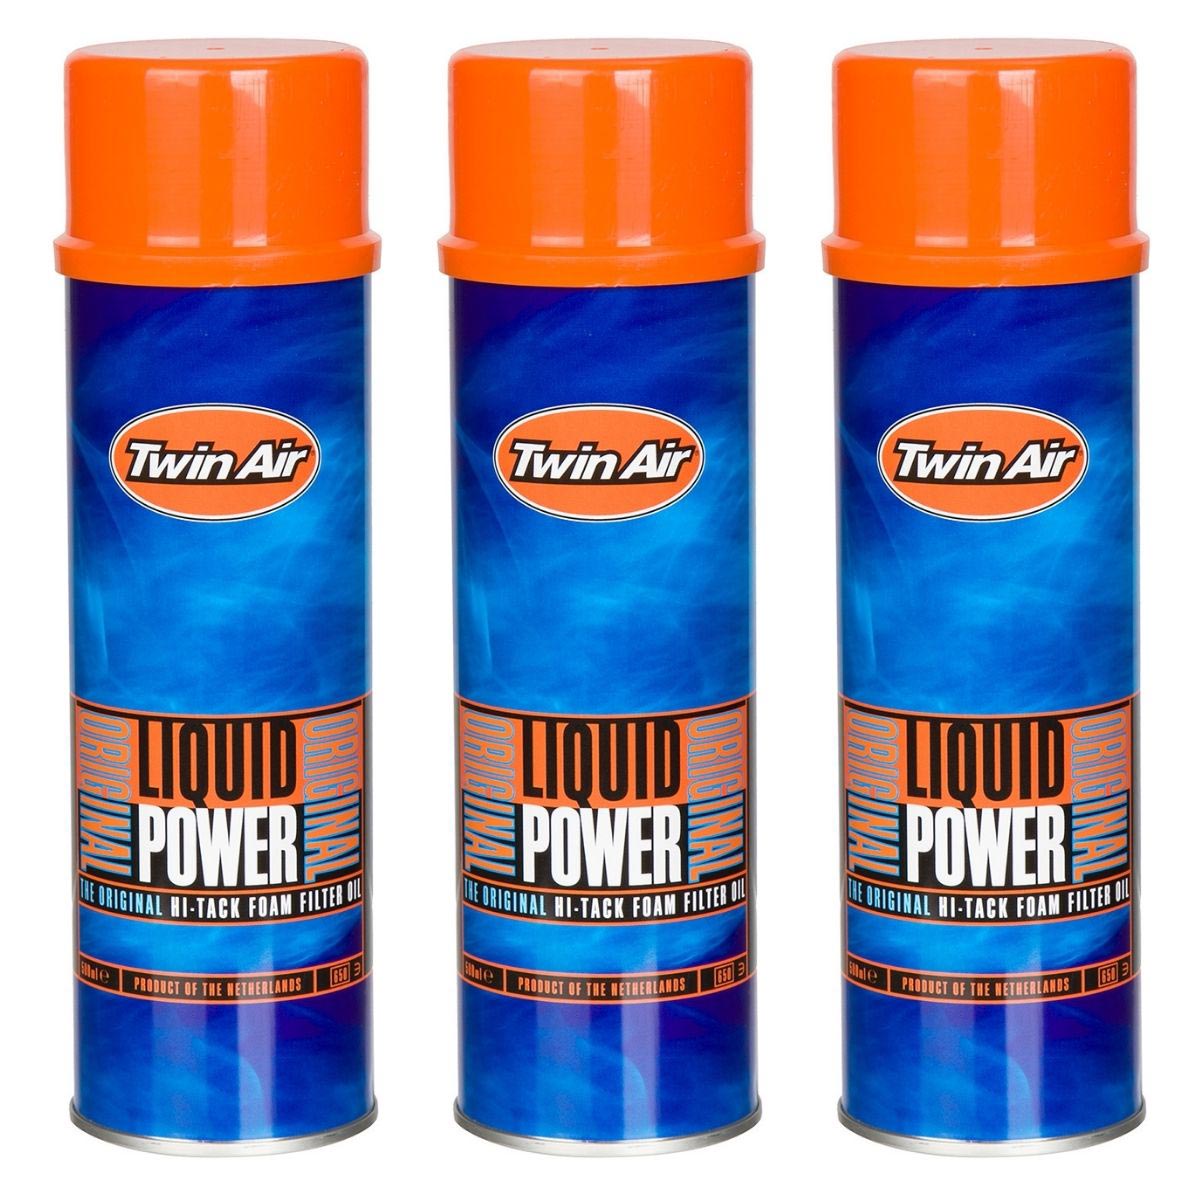 Twin Air Air Filter Oil Spray Liquid Power 3-pack, 500 ml each